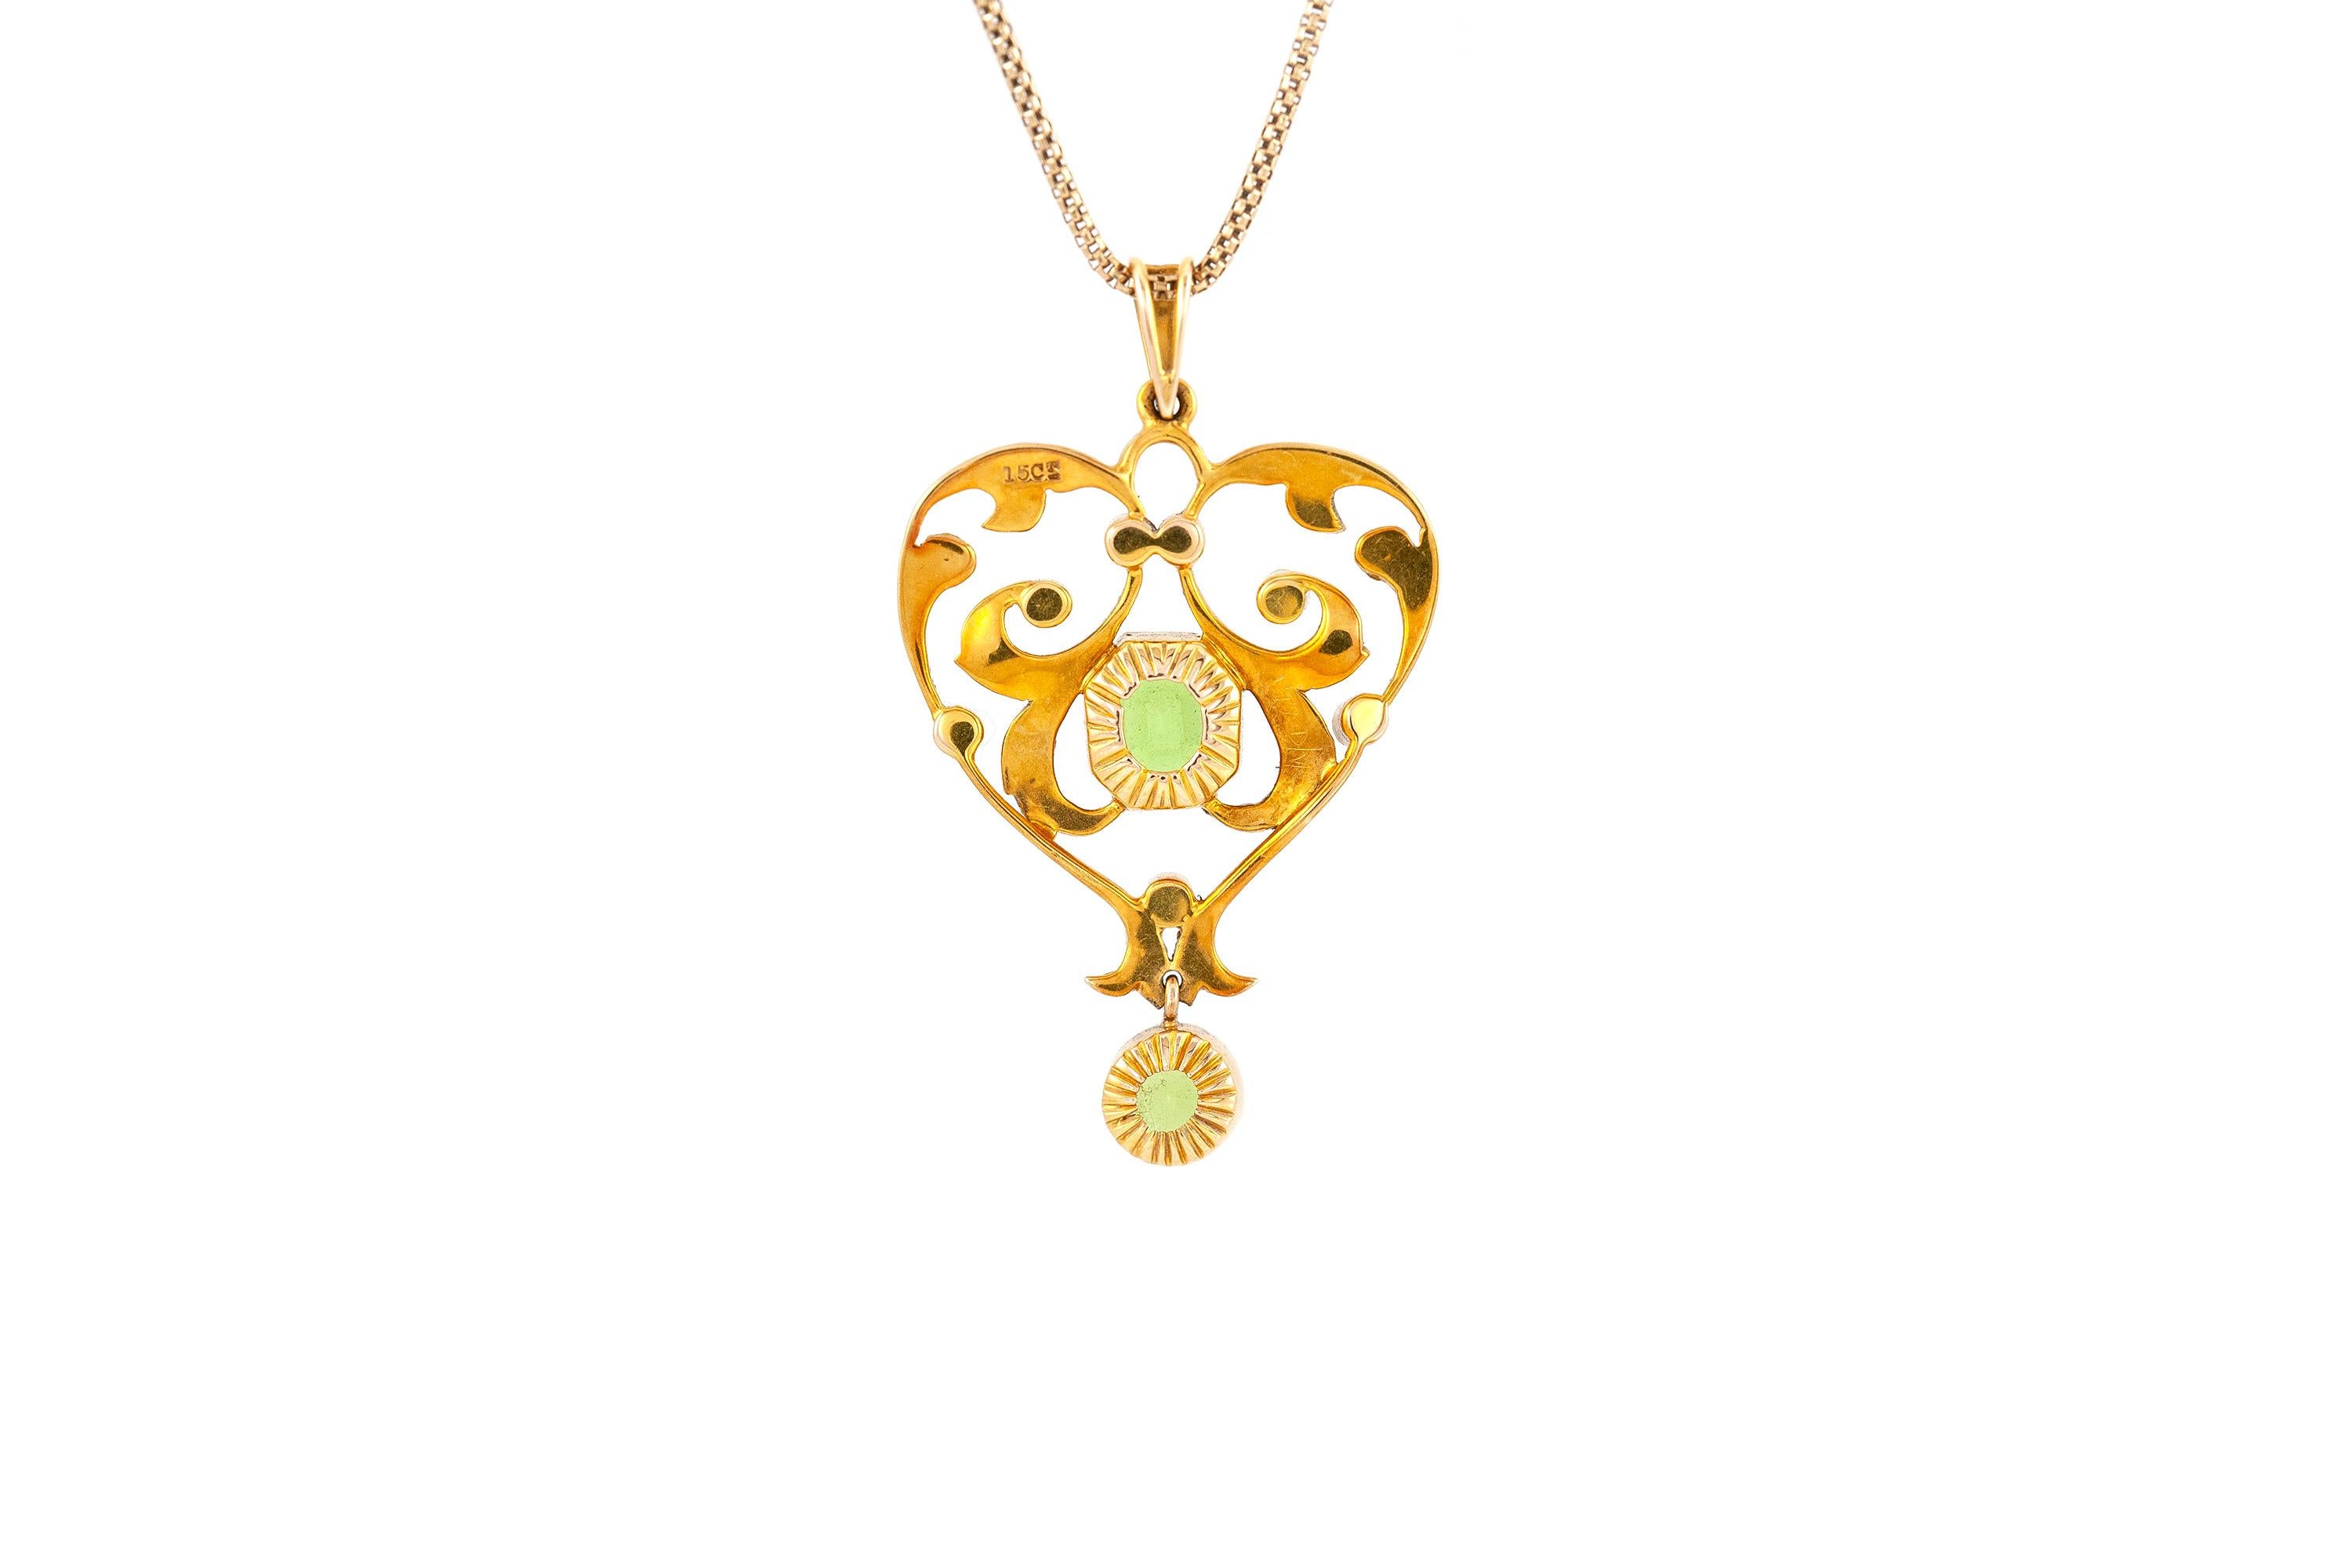 Le collier est finement réalisé en or jaune 14k et 15 avec des perles et des tourmalines. Circa 1920.